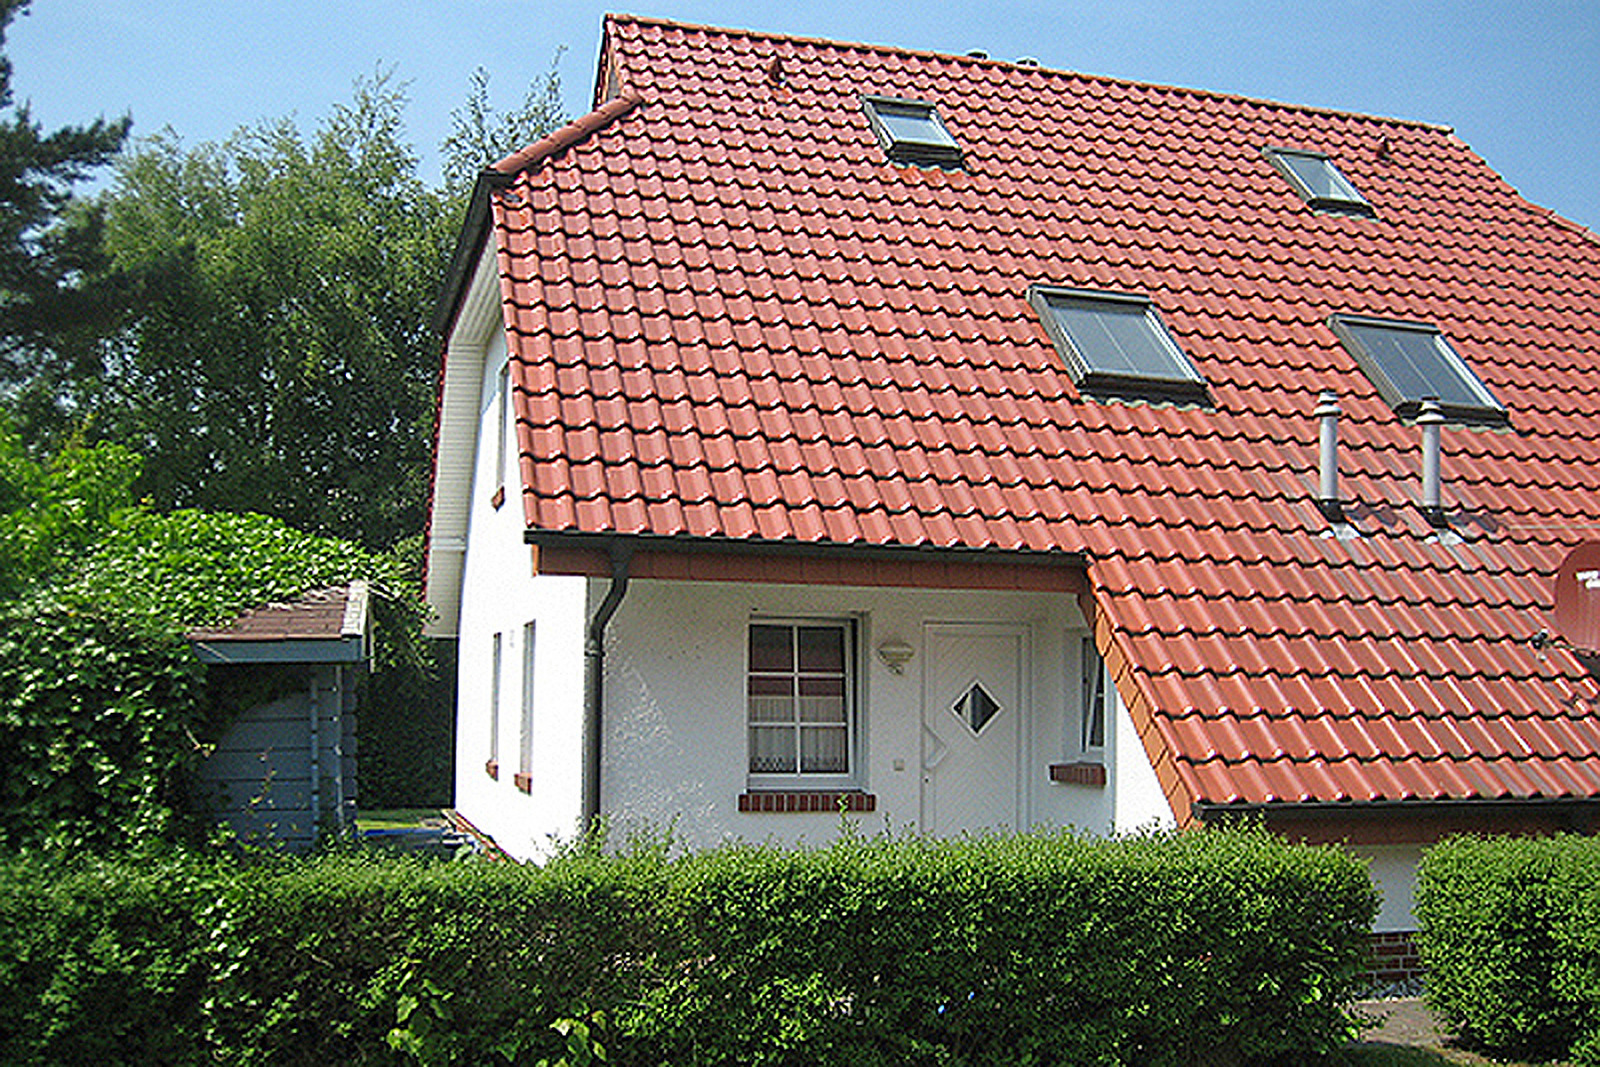 54 Grad Nord Ferienhaus  Mecklenburger Ostseeküste